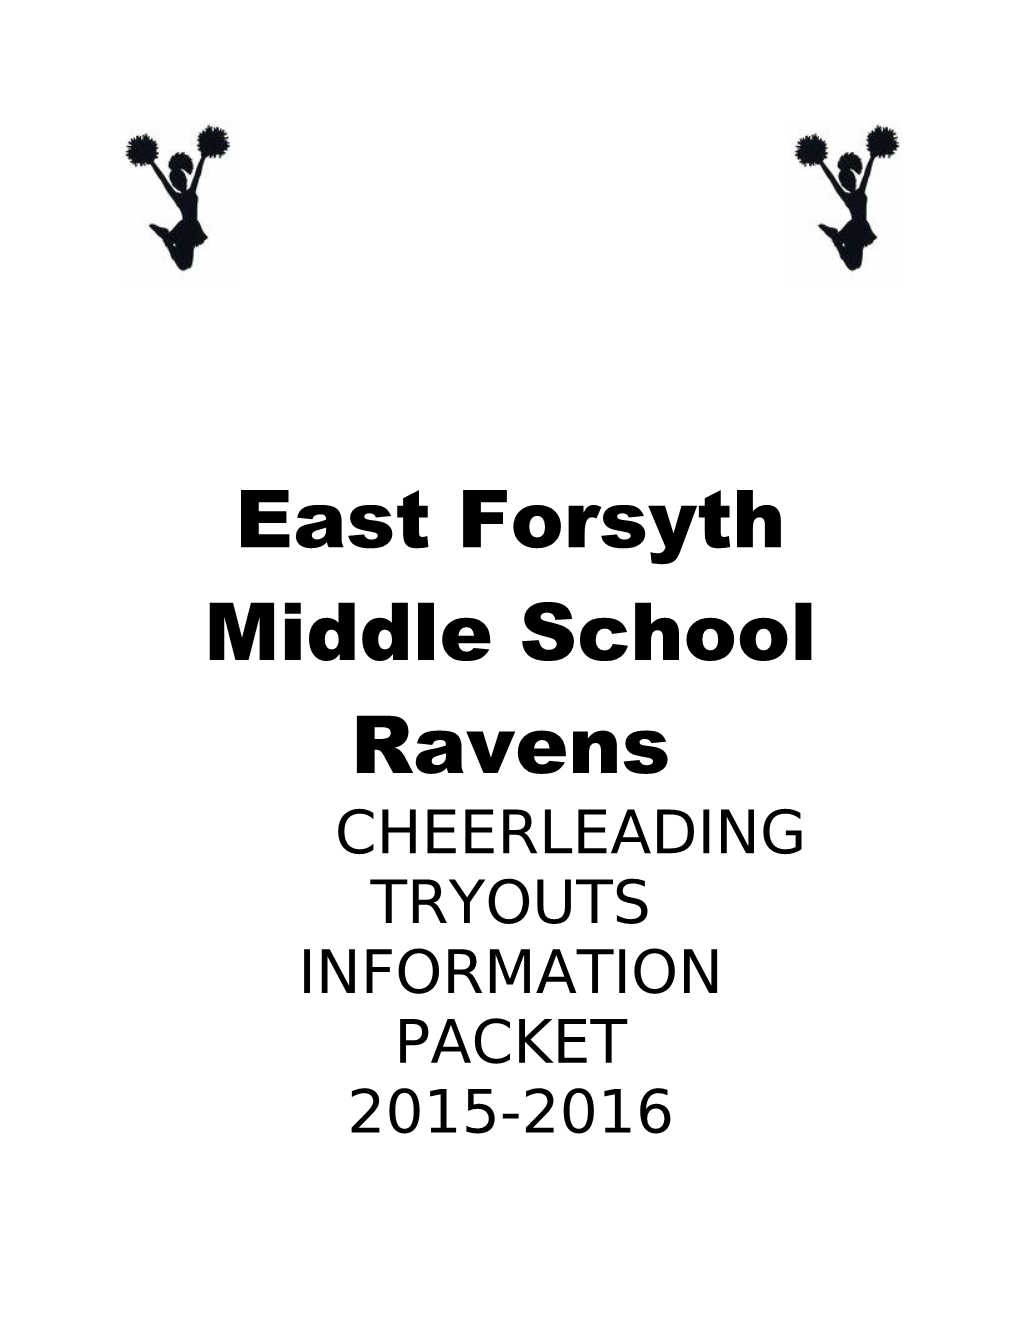 East Forsyth Middle School Ravens